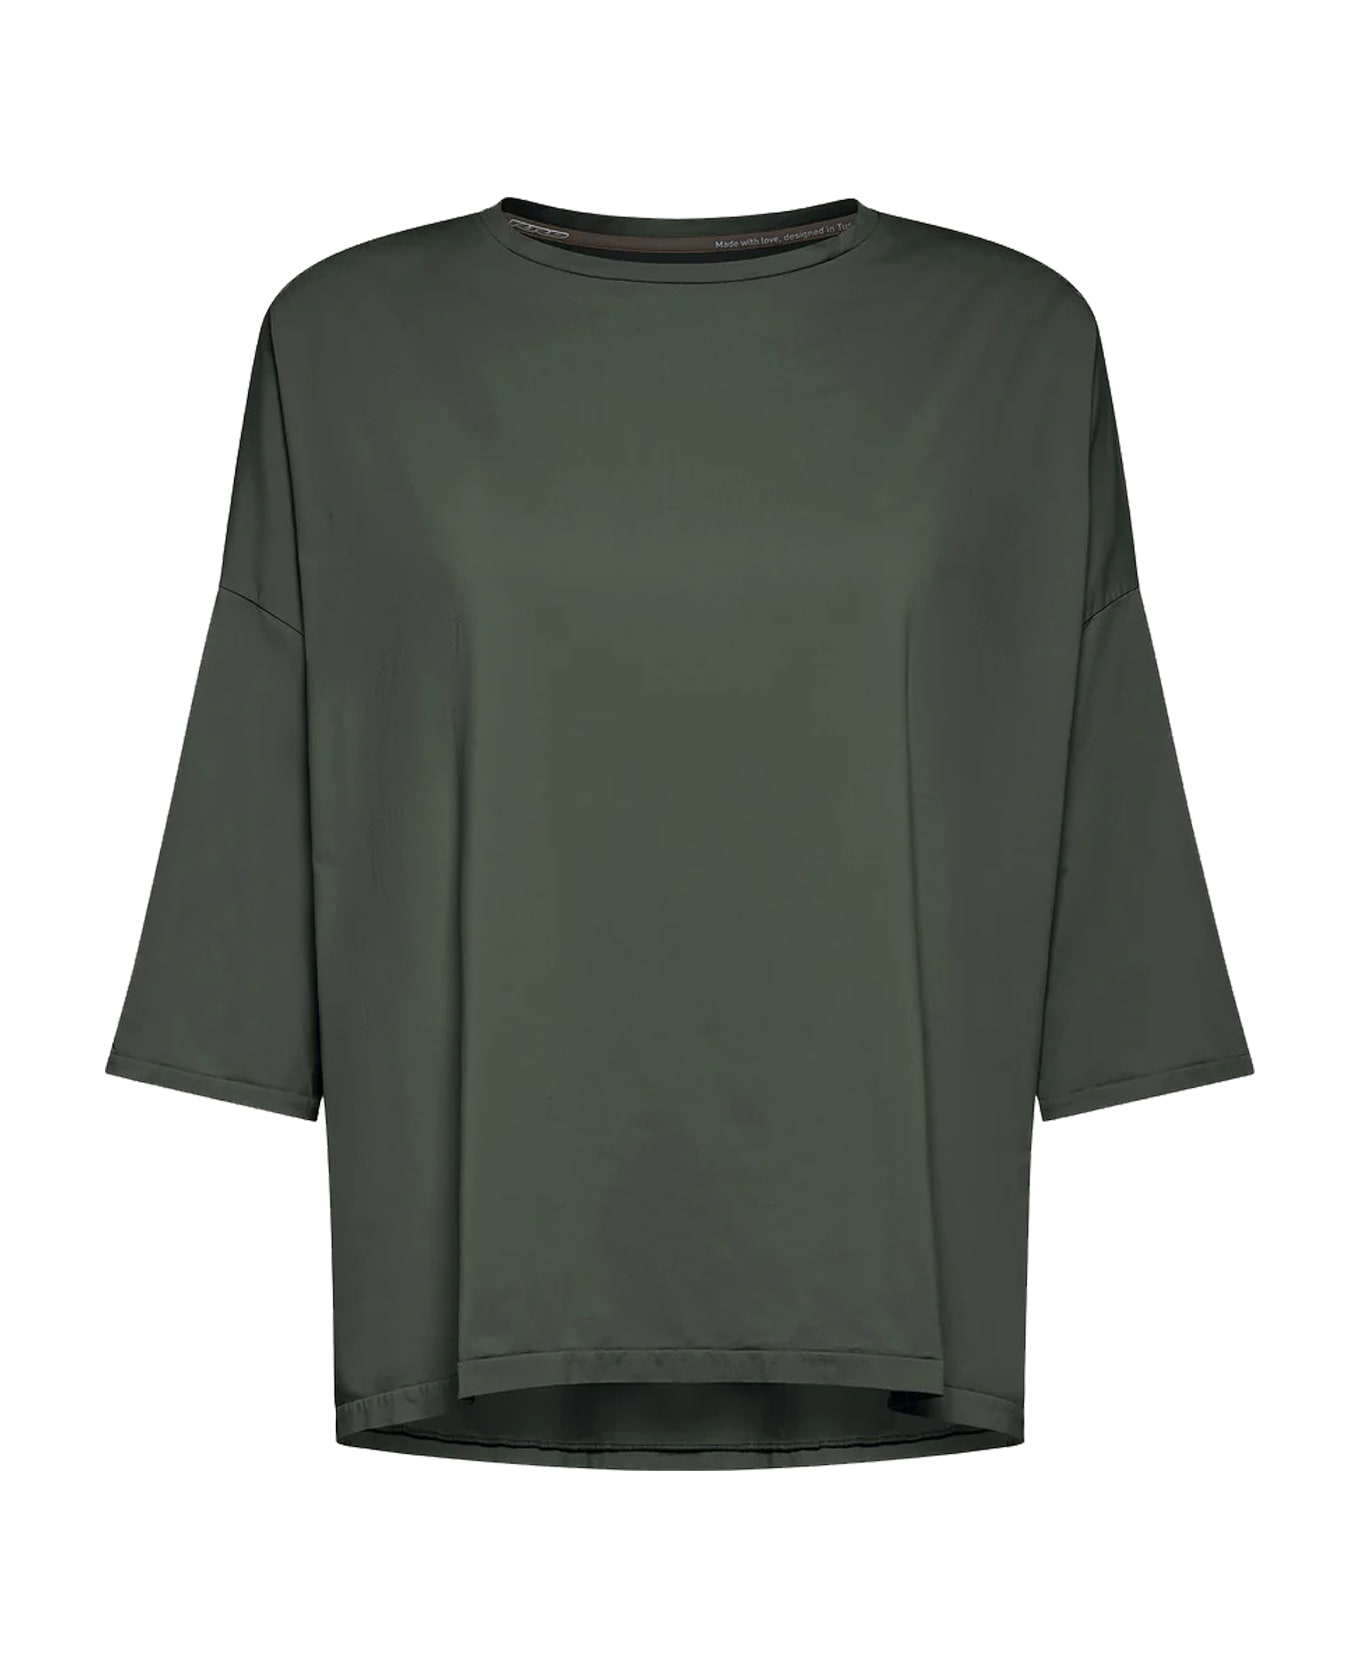 RRD - Roberto Ricci Design T-shirt - Green Tシャツ